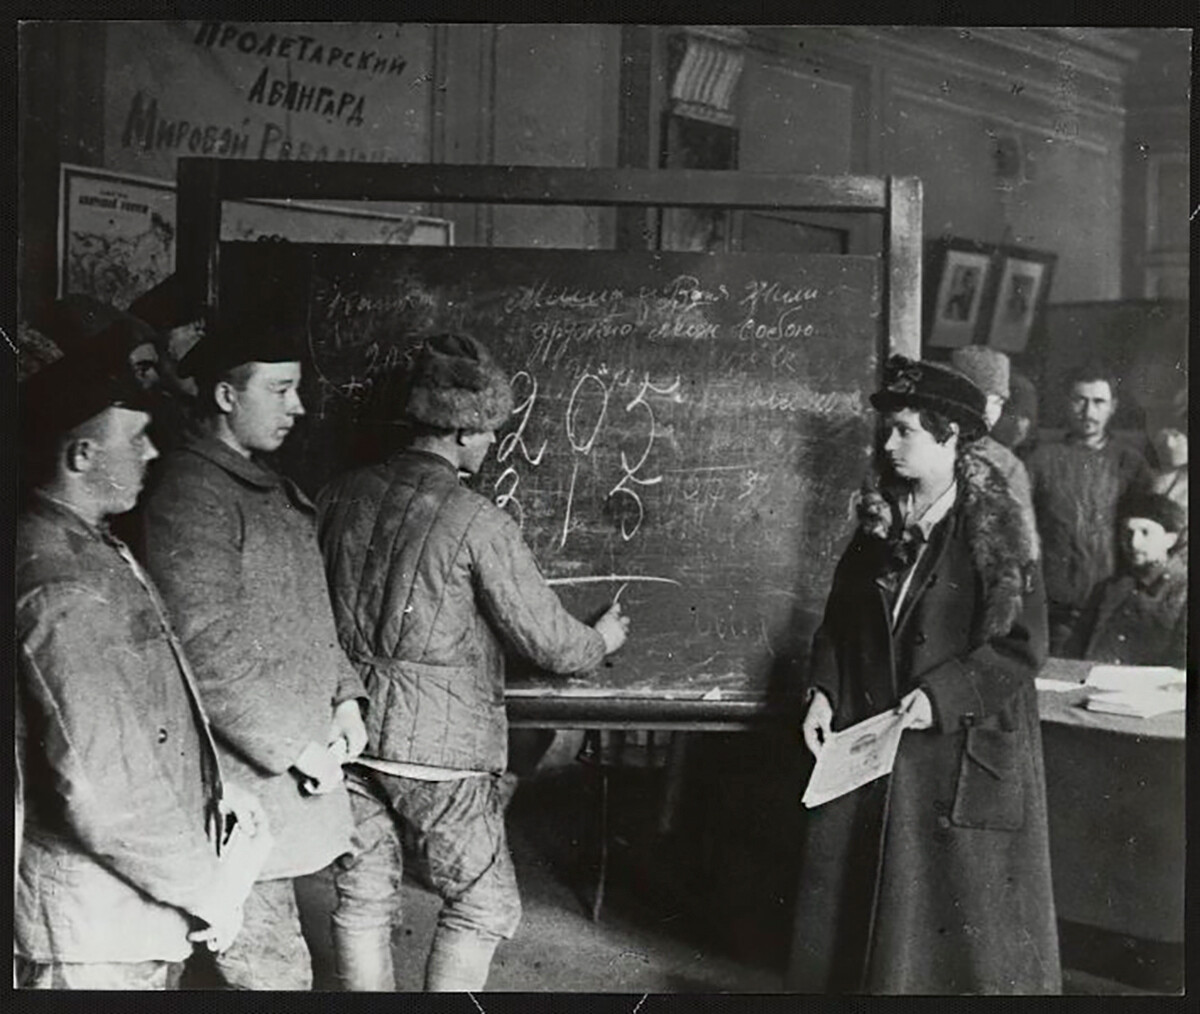 Clases para eliminar el analfabetismo, organizadas en el Rincón Rojo, distrito de Petrogrado, 1920 